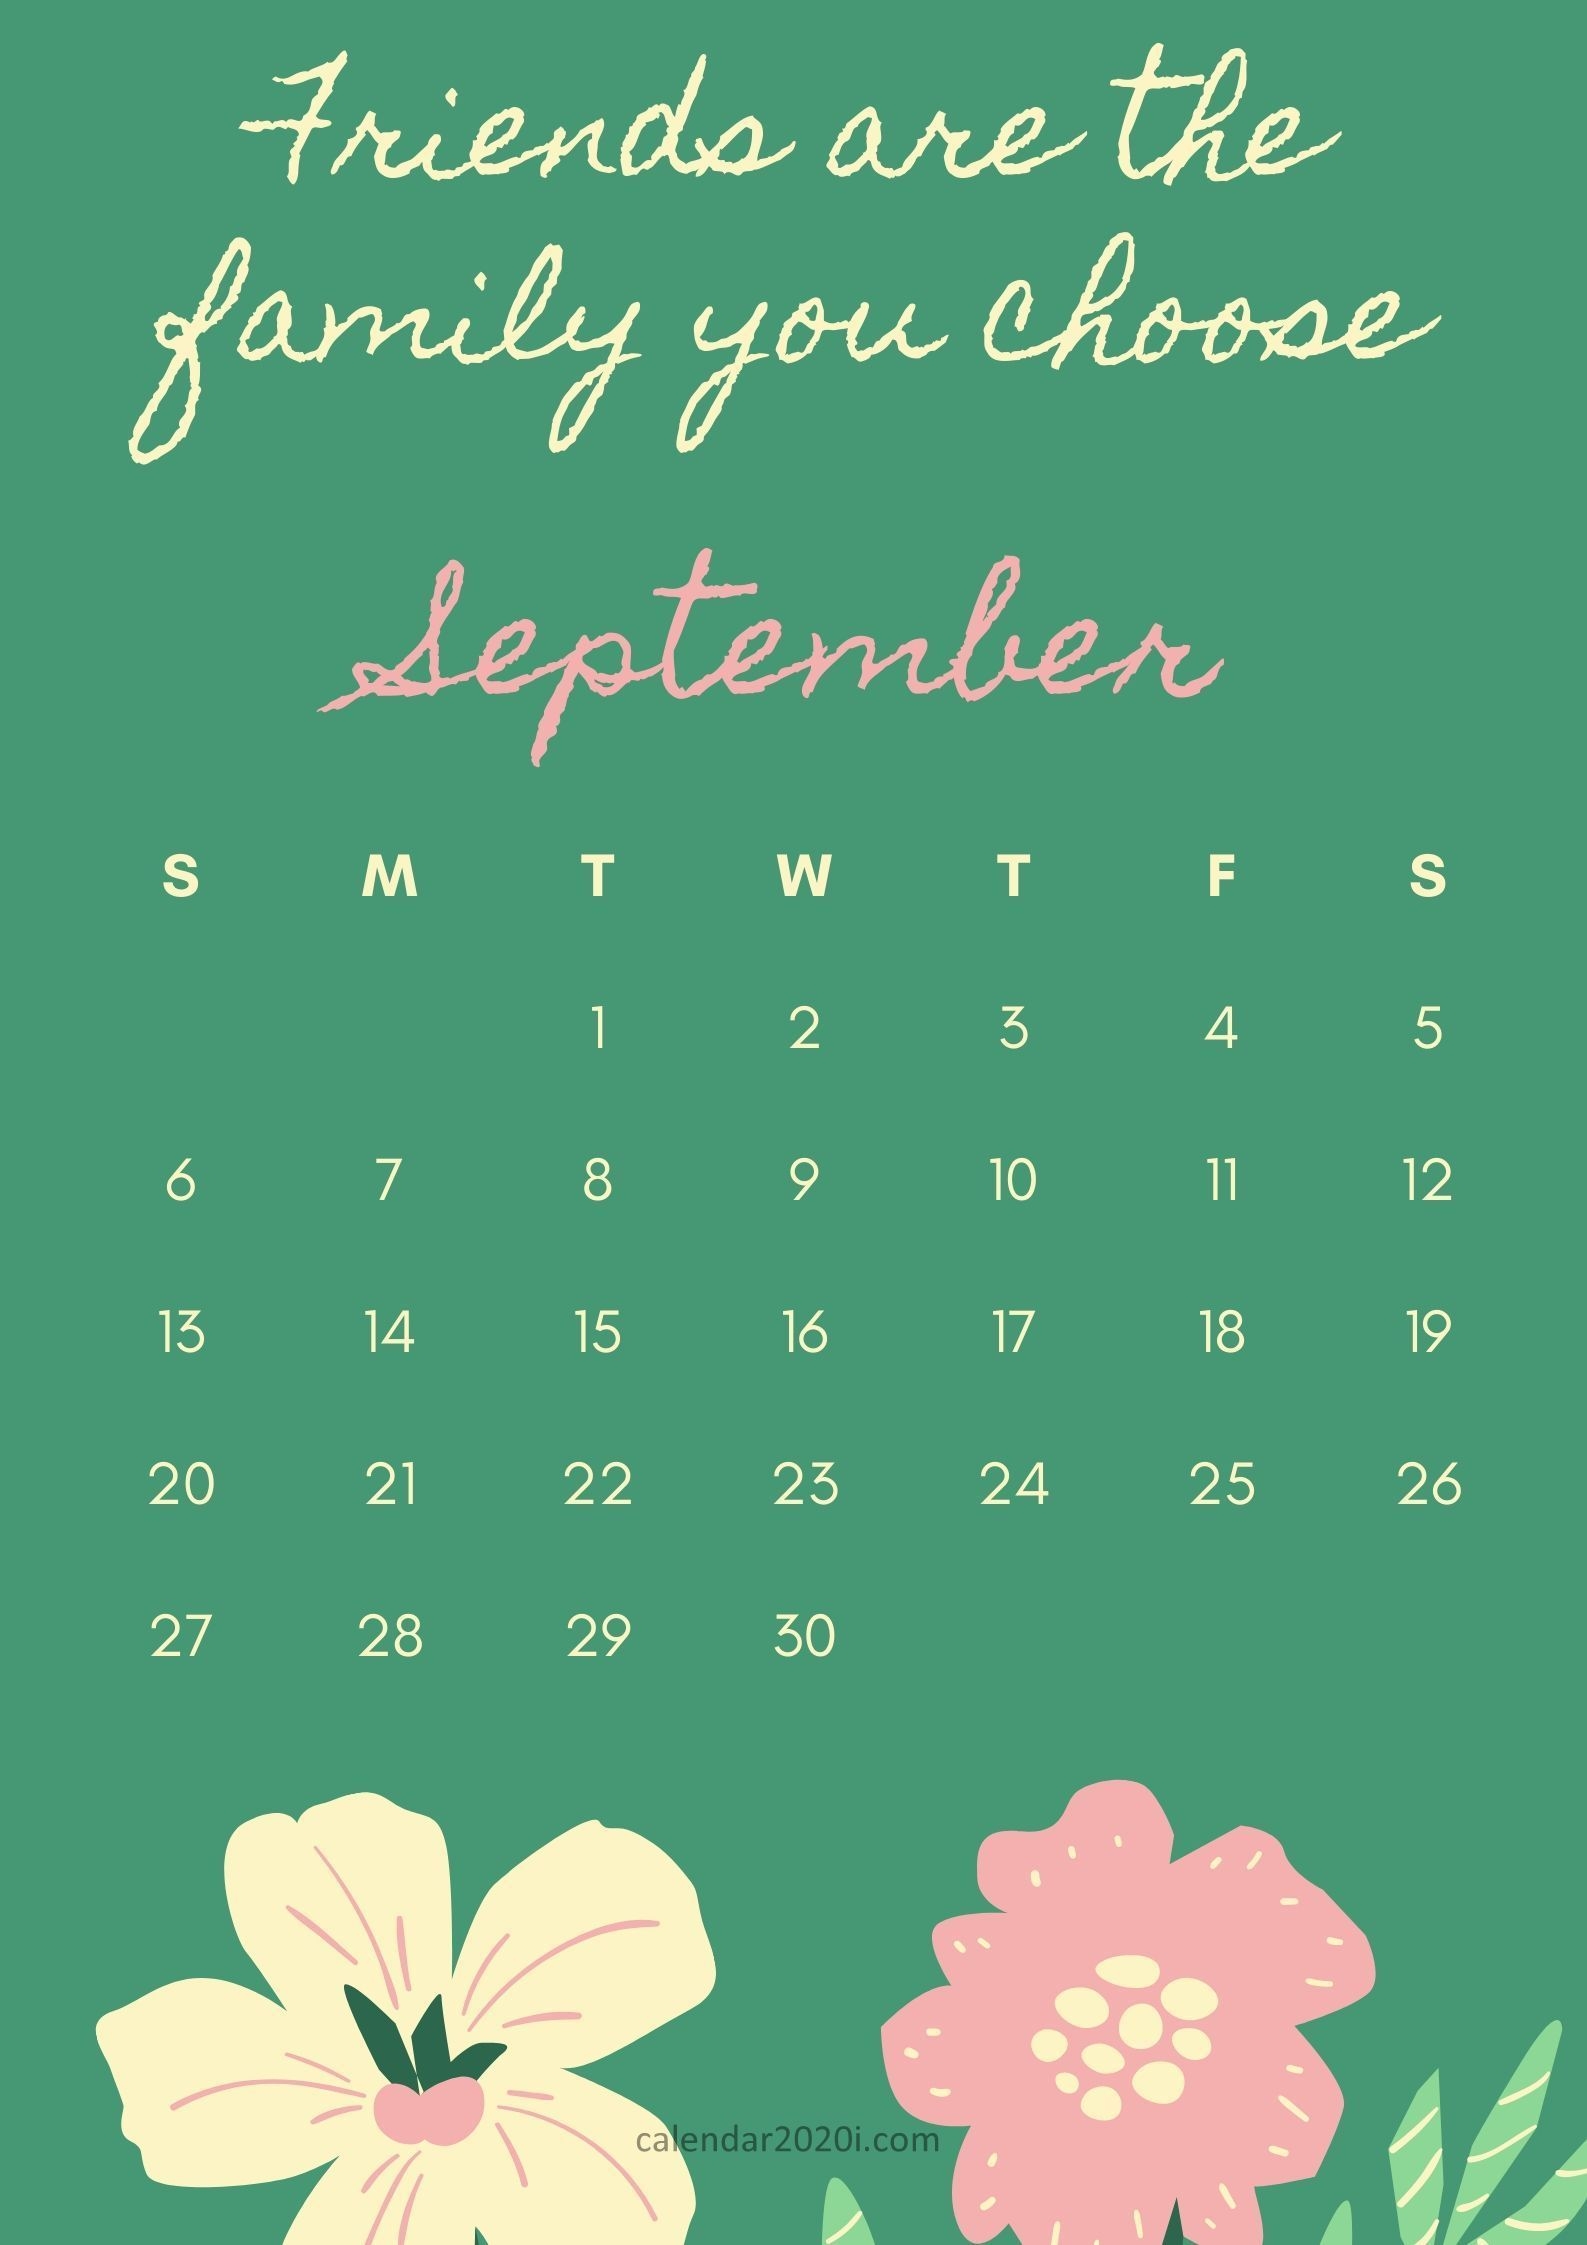 Inspirational September 2020 Calendar With Quotes | Calendar